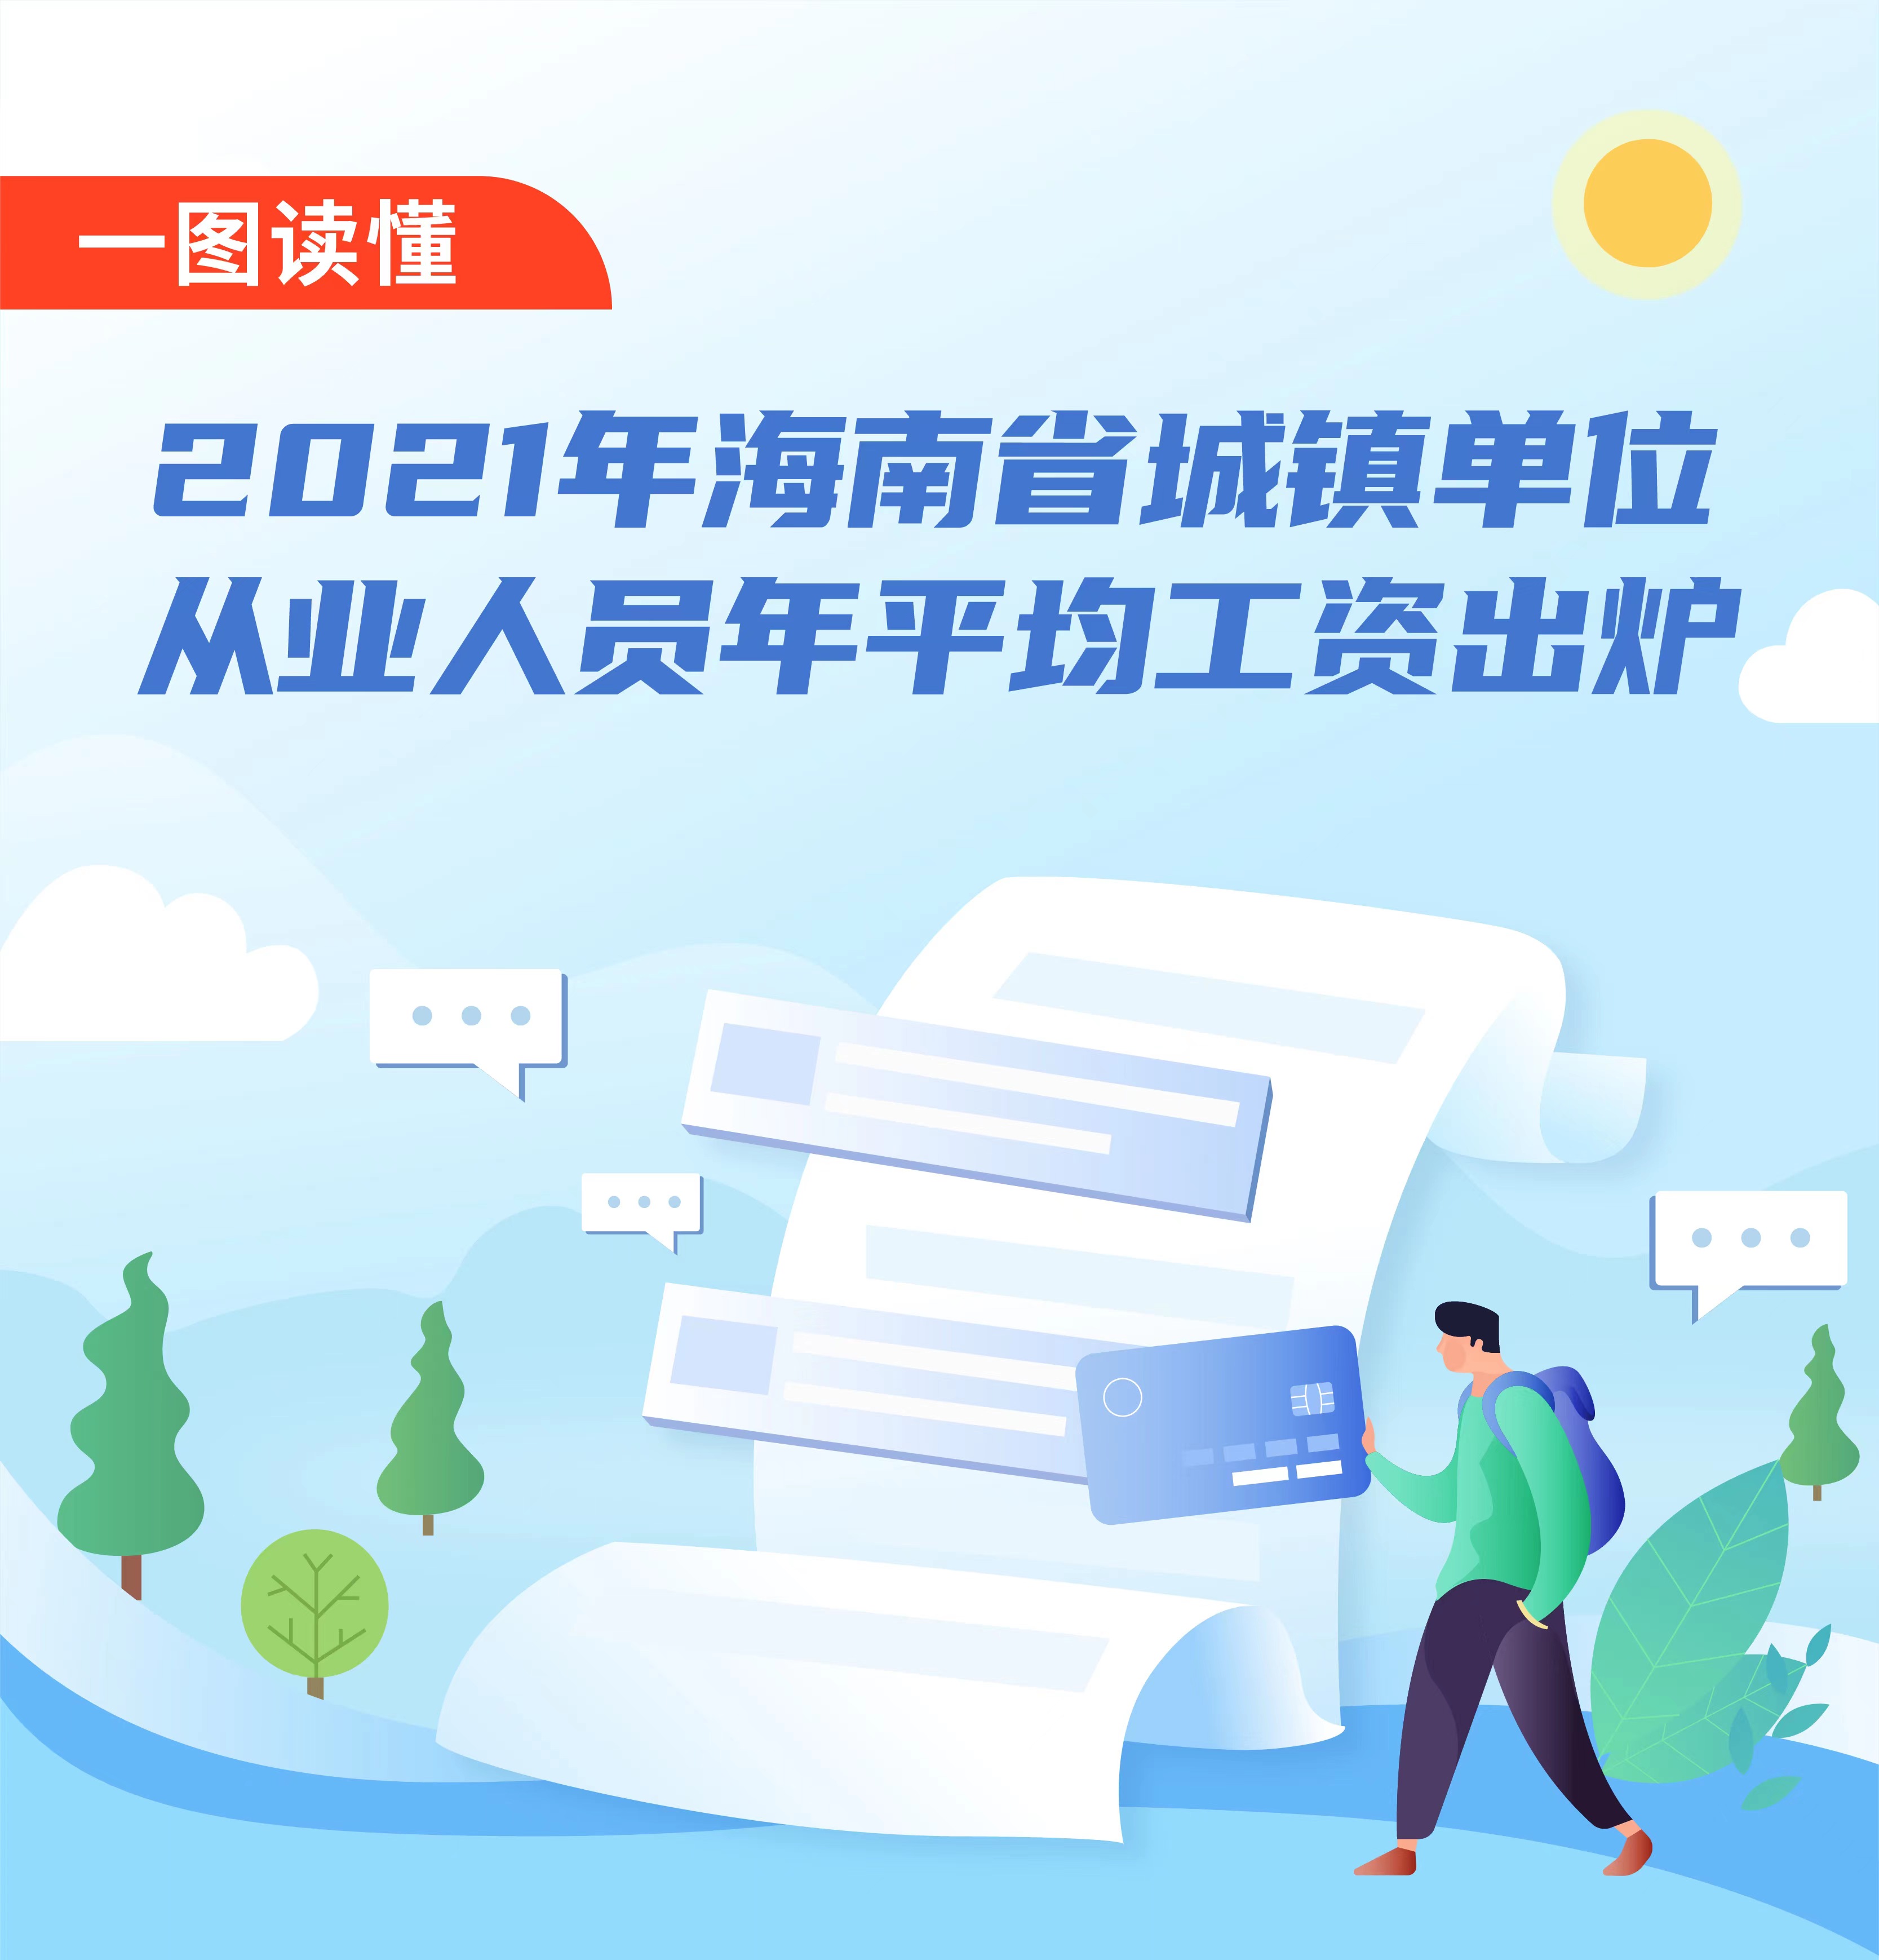 图解2021年海南省城镇单位从业人员年平均工资出炉